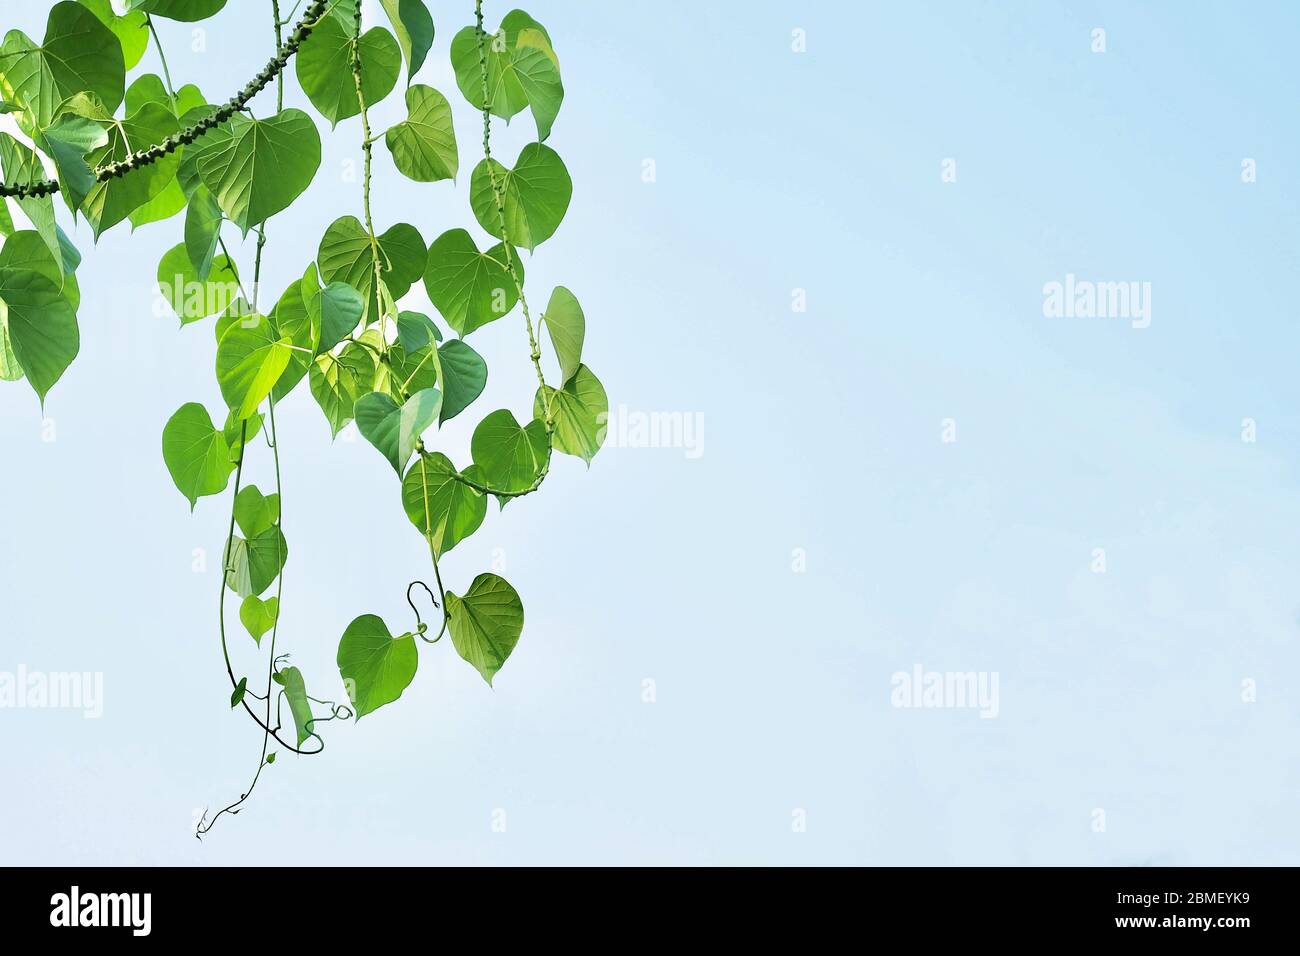 Gemüse und Kräuter, Tinospora Cordifolia, Guduchi, Giloy oder Herz leaved Moonseed Plant gegen auf Blue Sky. In der traditionellen Medizin zur Behandlung von Vari Stockfoto